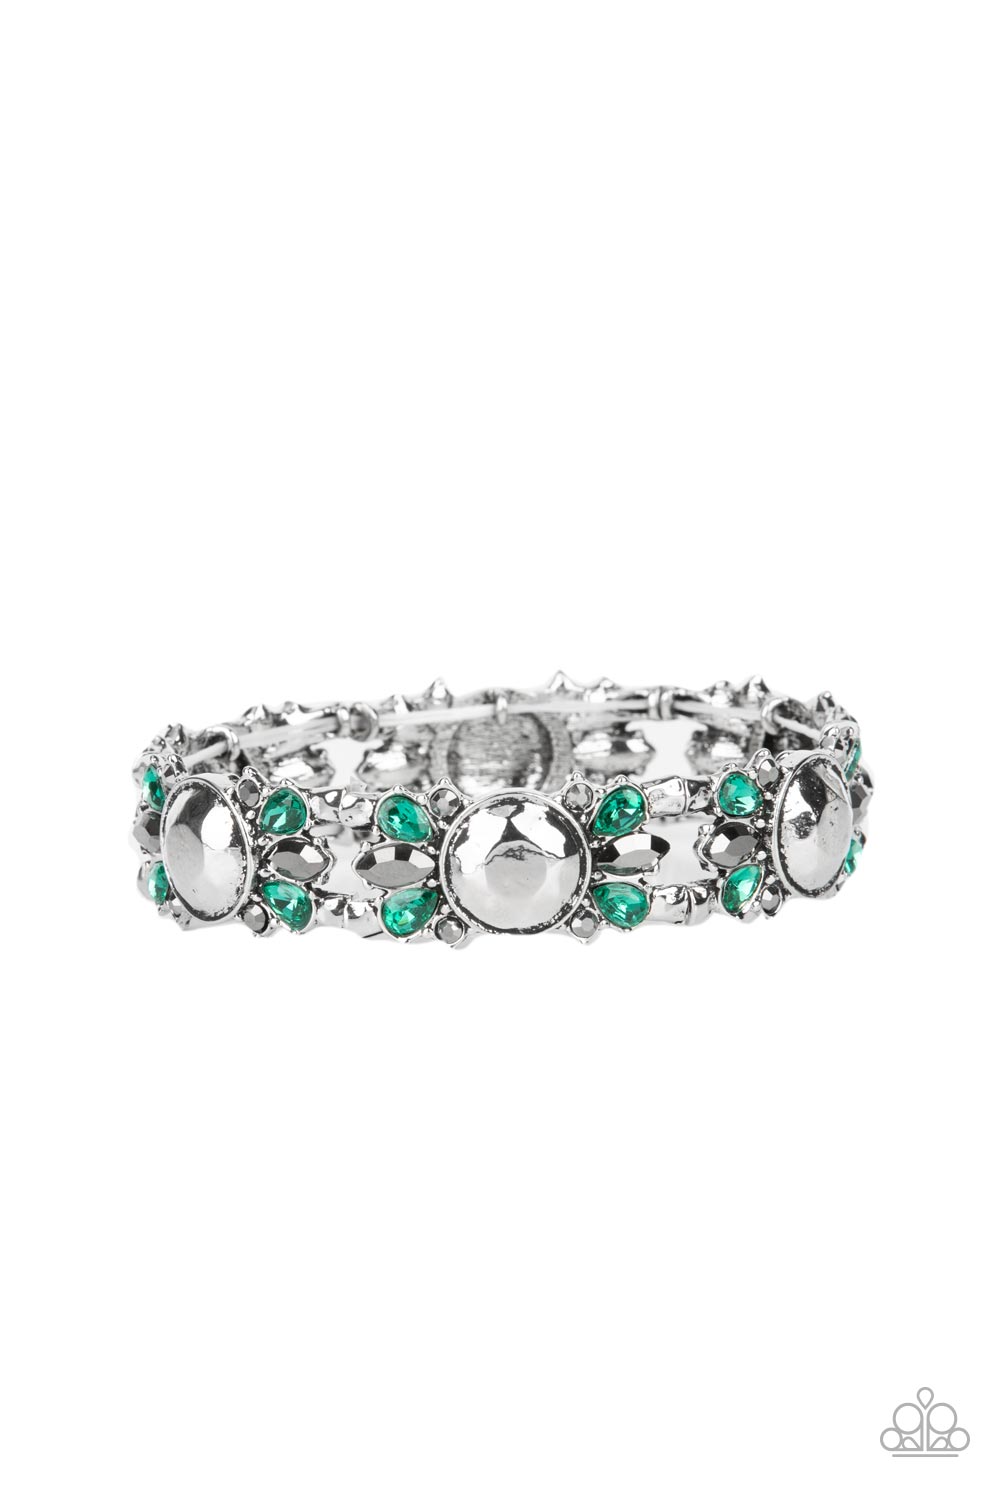 Definitively Diva - Green Bracelet - Princess Glam Shop